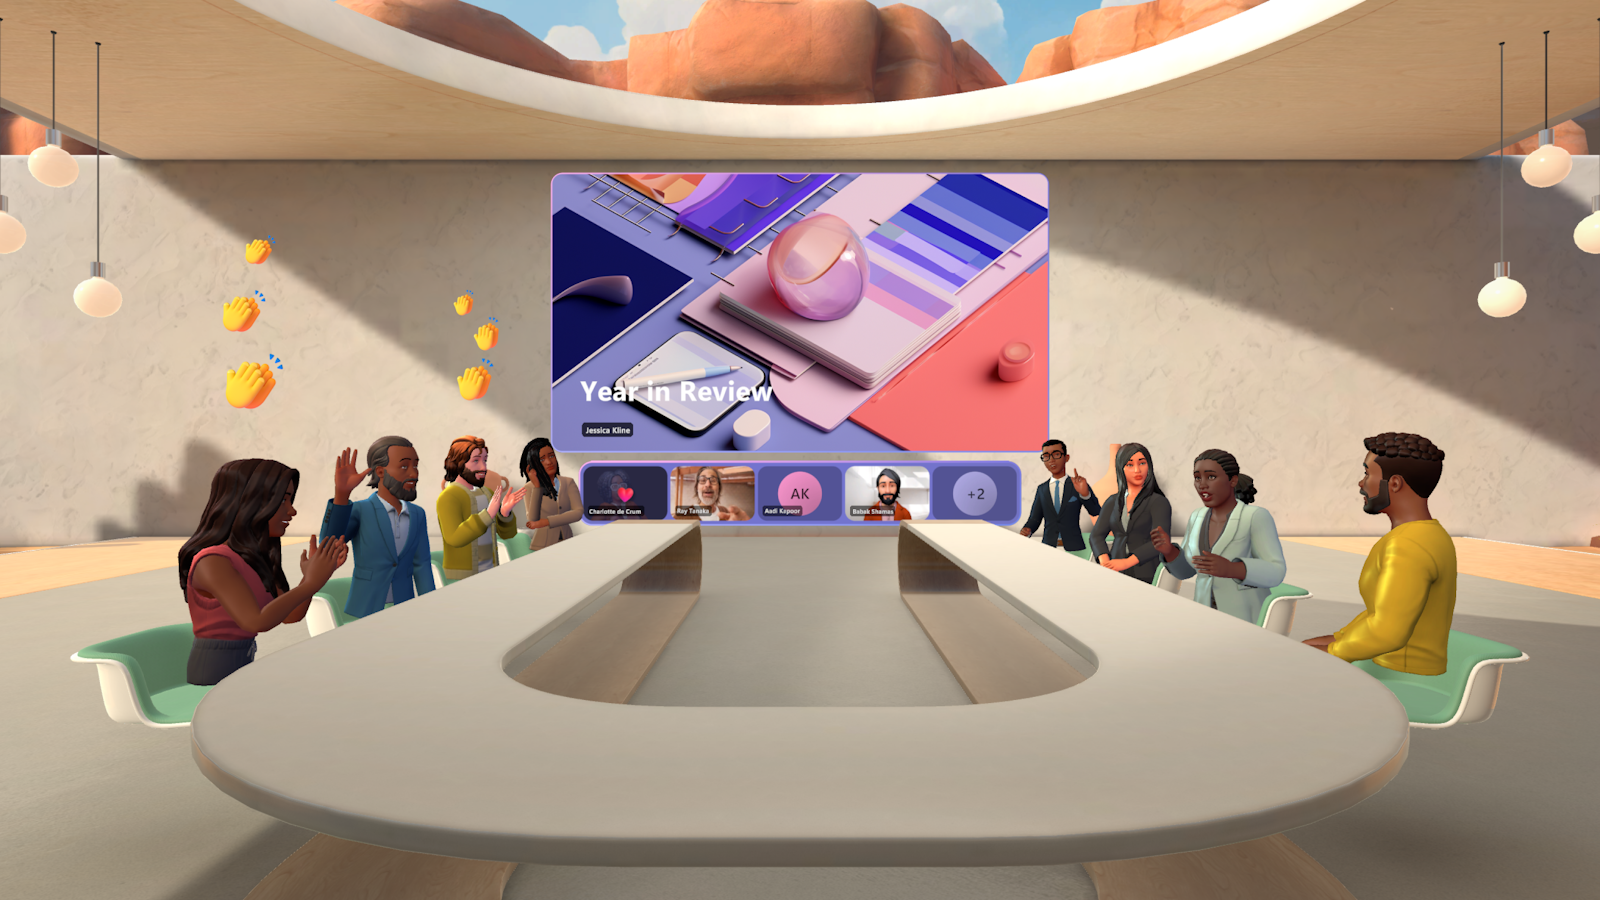 イマーシブ 空間で Teams 会議を行っているユーザーの画像。